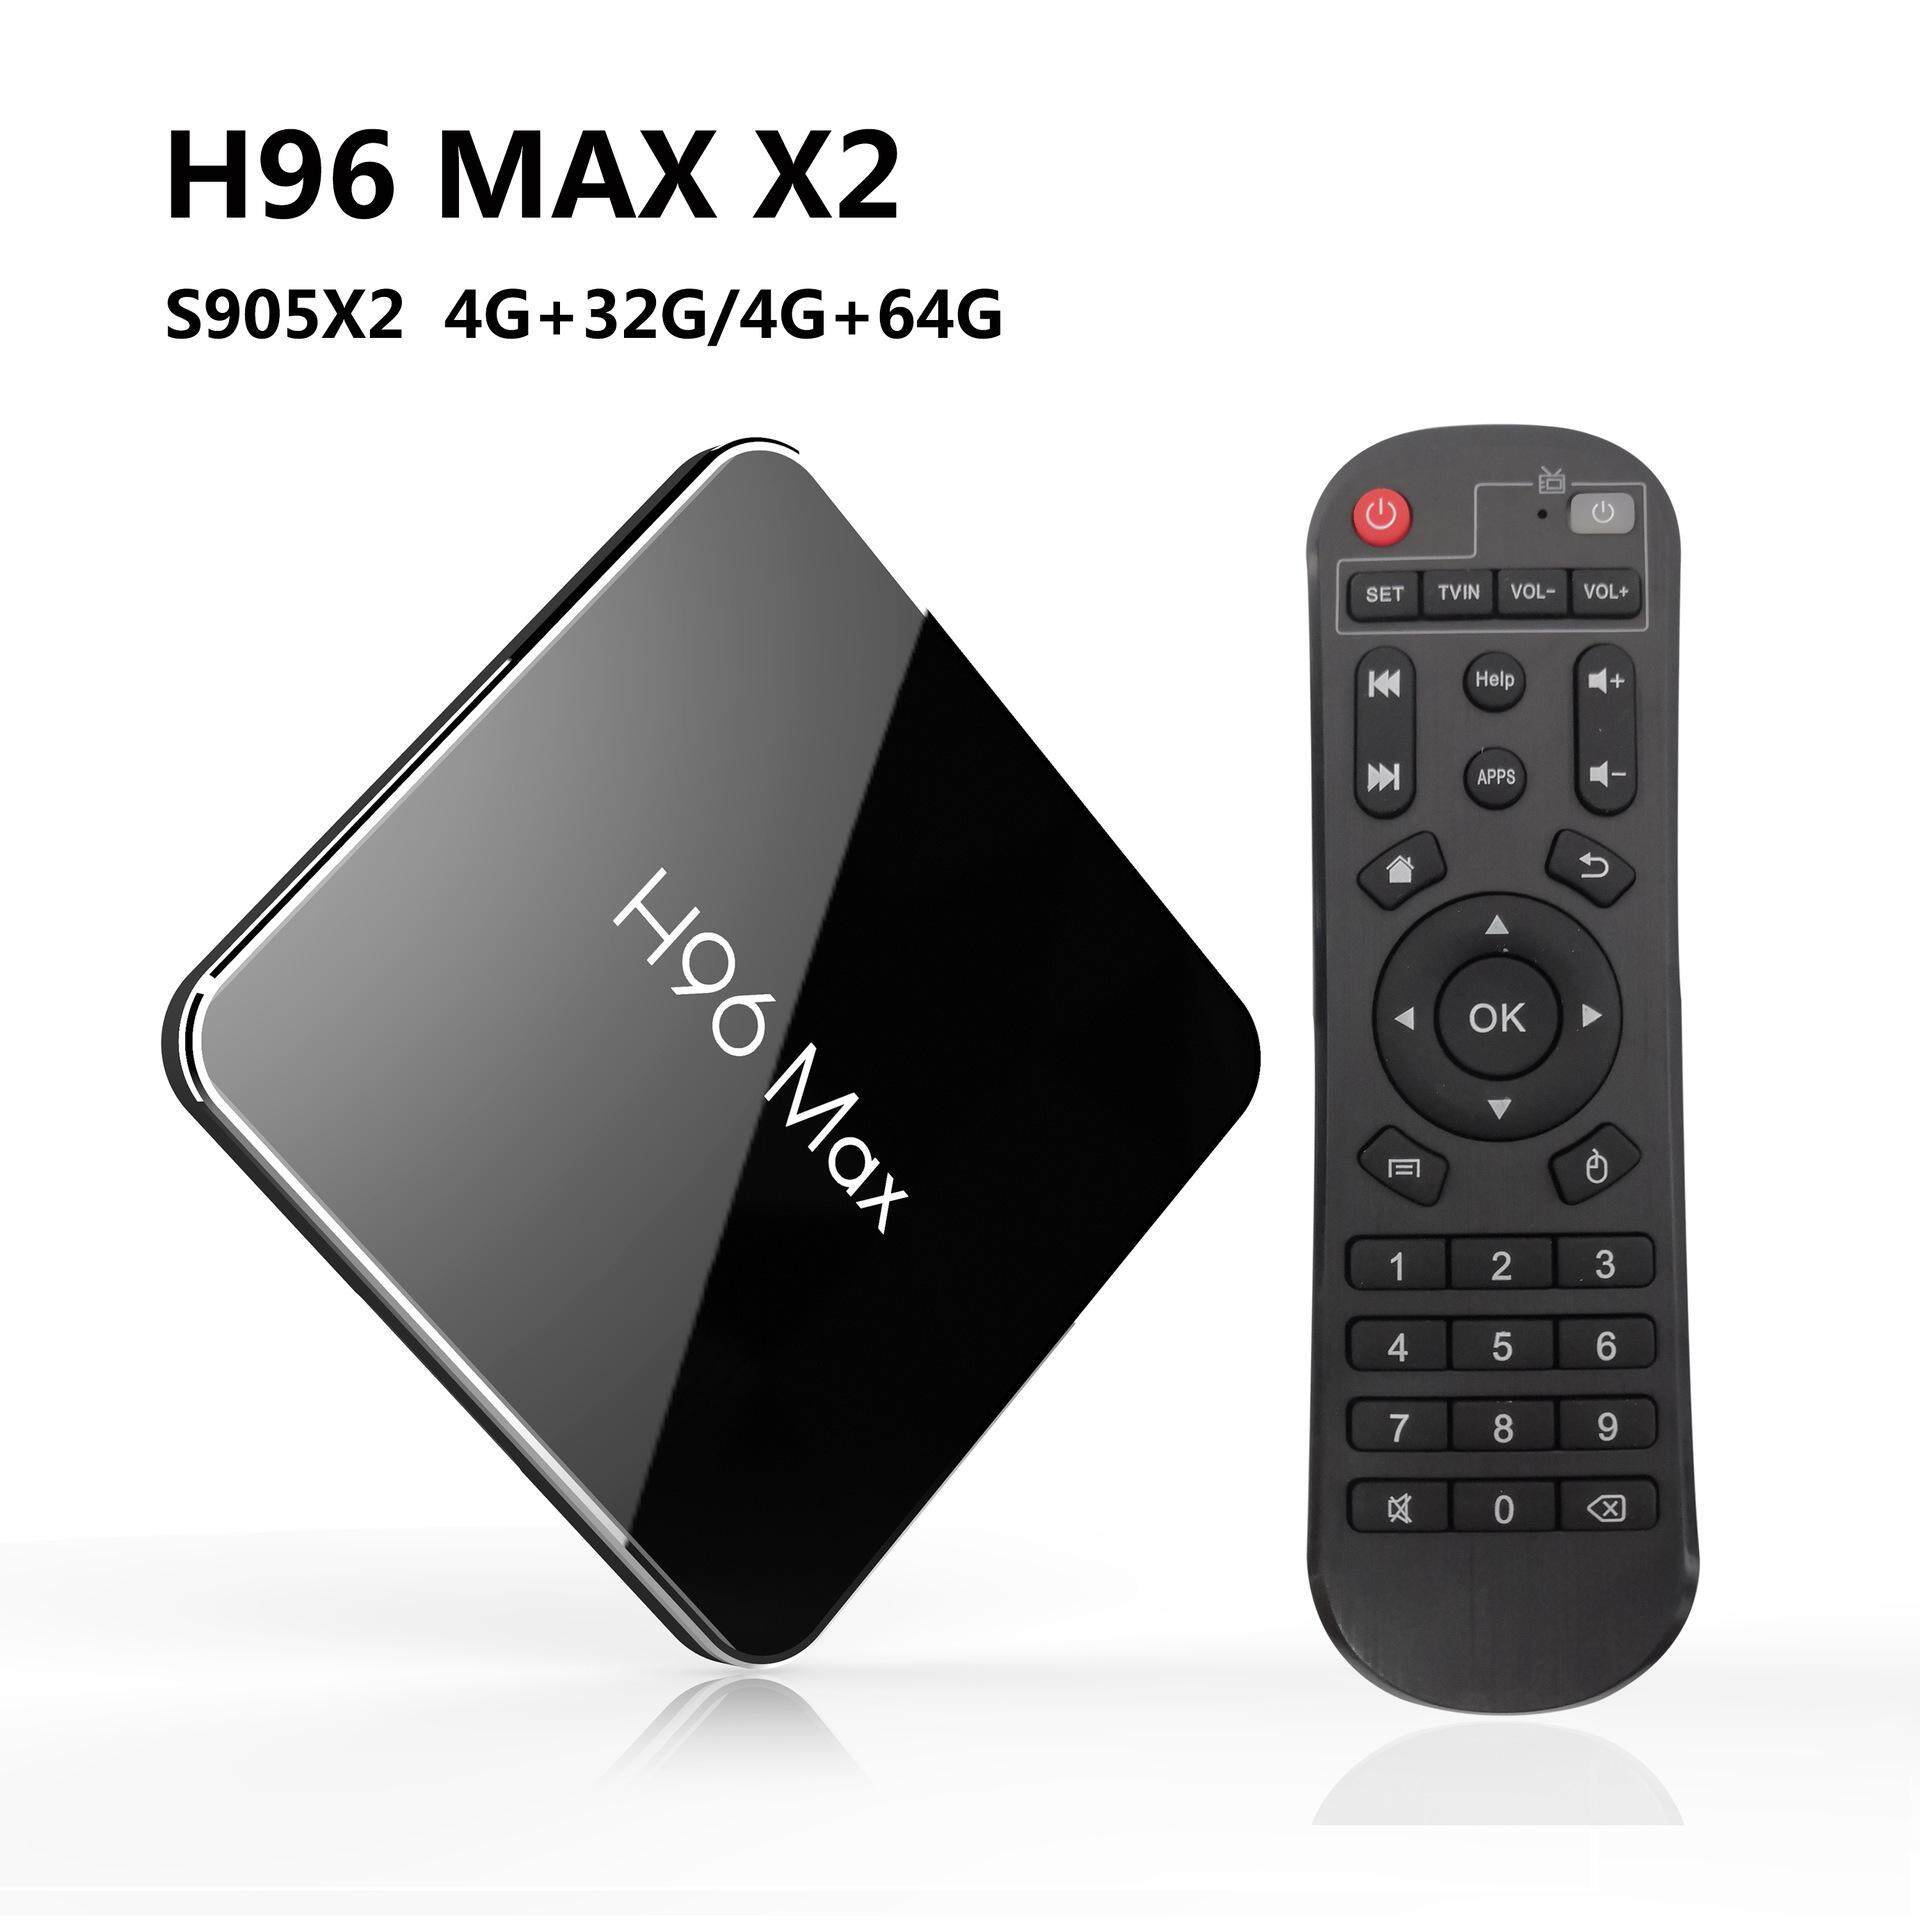 การใช้งาน  พะเยา Android Smart TV Box กล่องแอนดรอยด์รุ่นใหม่ปี 2019 H96 MAX X2 แรม4GB/64GB S905X2 android 8.1+แอพดูฟรีทีวีออนไลน์ ละคร ย้อนหลัง ฟังเพลง ยูทูป กูเกิล เฟซบุ๊ค + (ฟรี เม้าส์ไวเลสไร้สาย+สาย HDMI+รีโมท+ถ่านพานาโซนิคอัลคาไลน์ 2 ก้อน+คู่มือติดตั้งไทย)